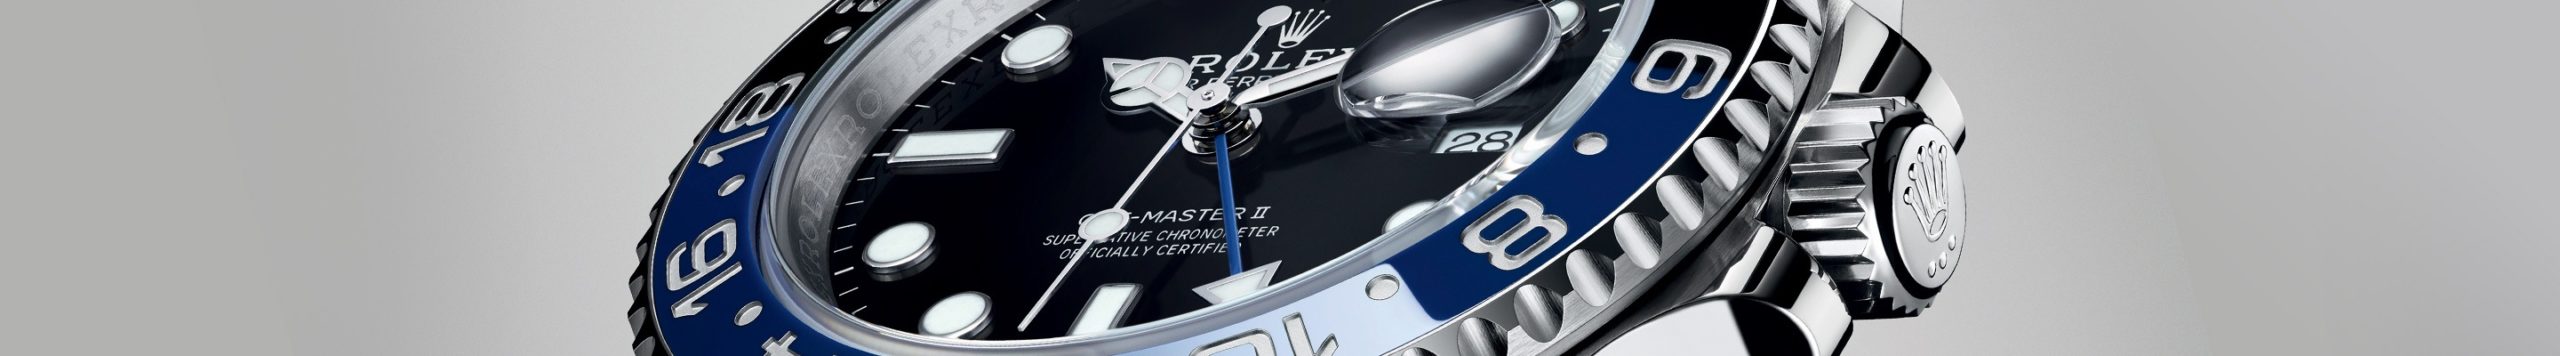 นาฬิกา Rolex GMT-Master II ที่ ไทม์ ไมดาส สยามพารากอน